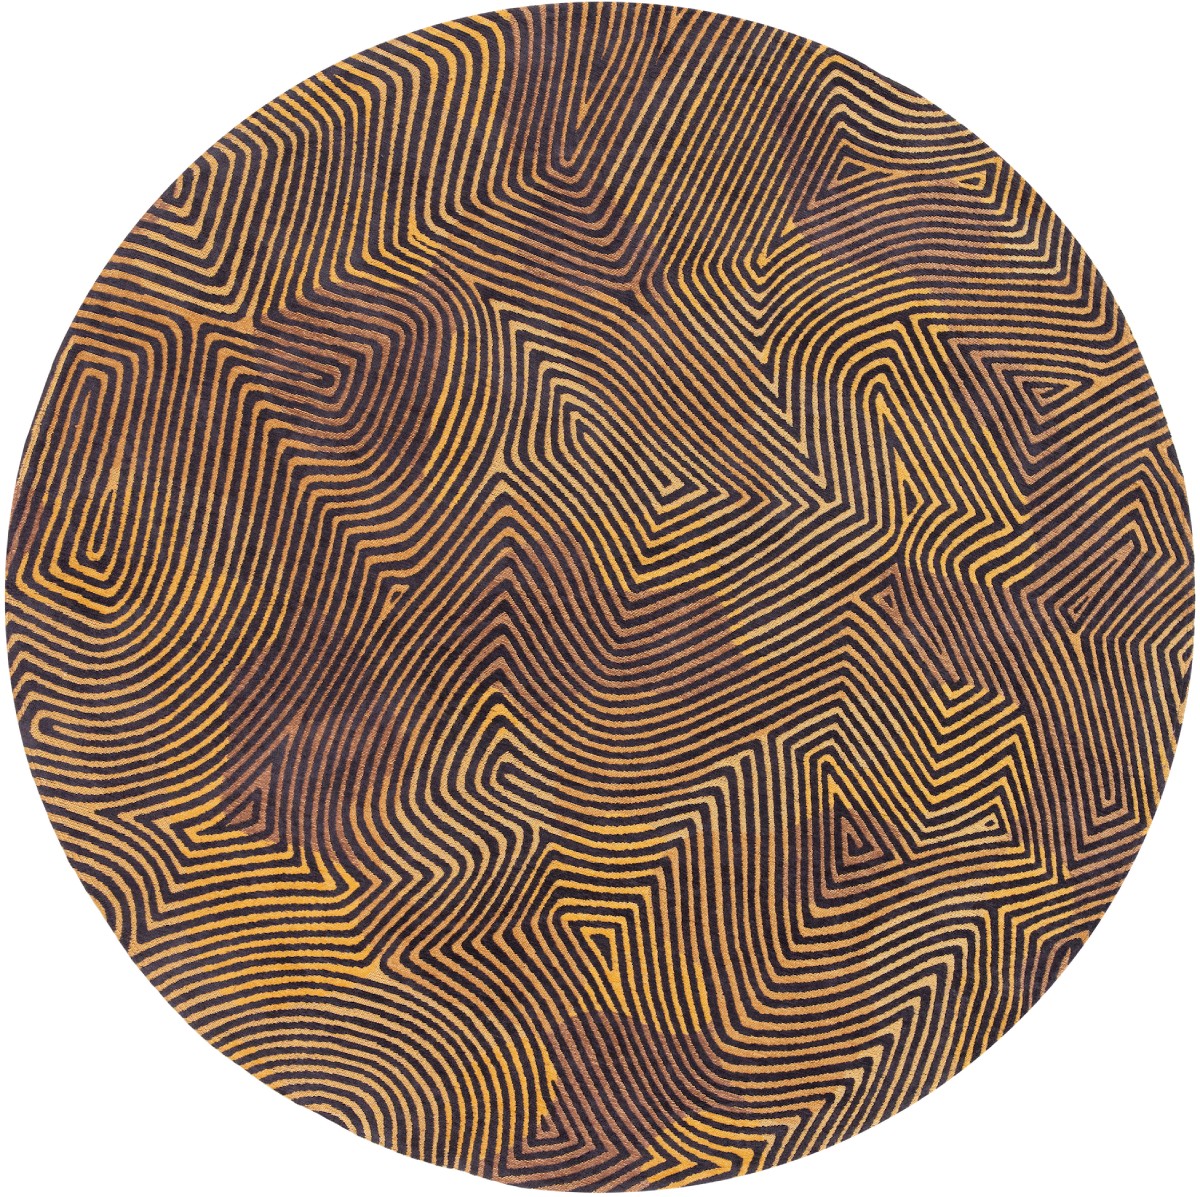 Black Gold Round Rug ☞ Size: Round 8' (Ø 240 cm)